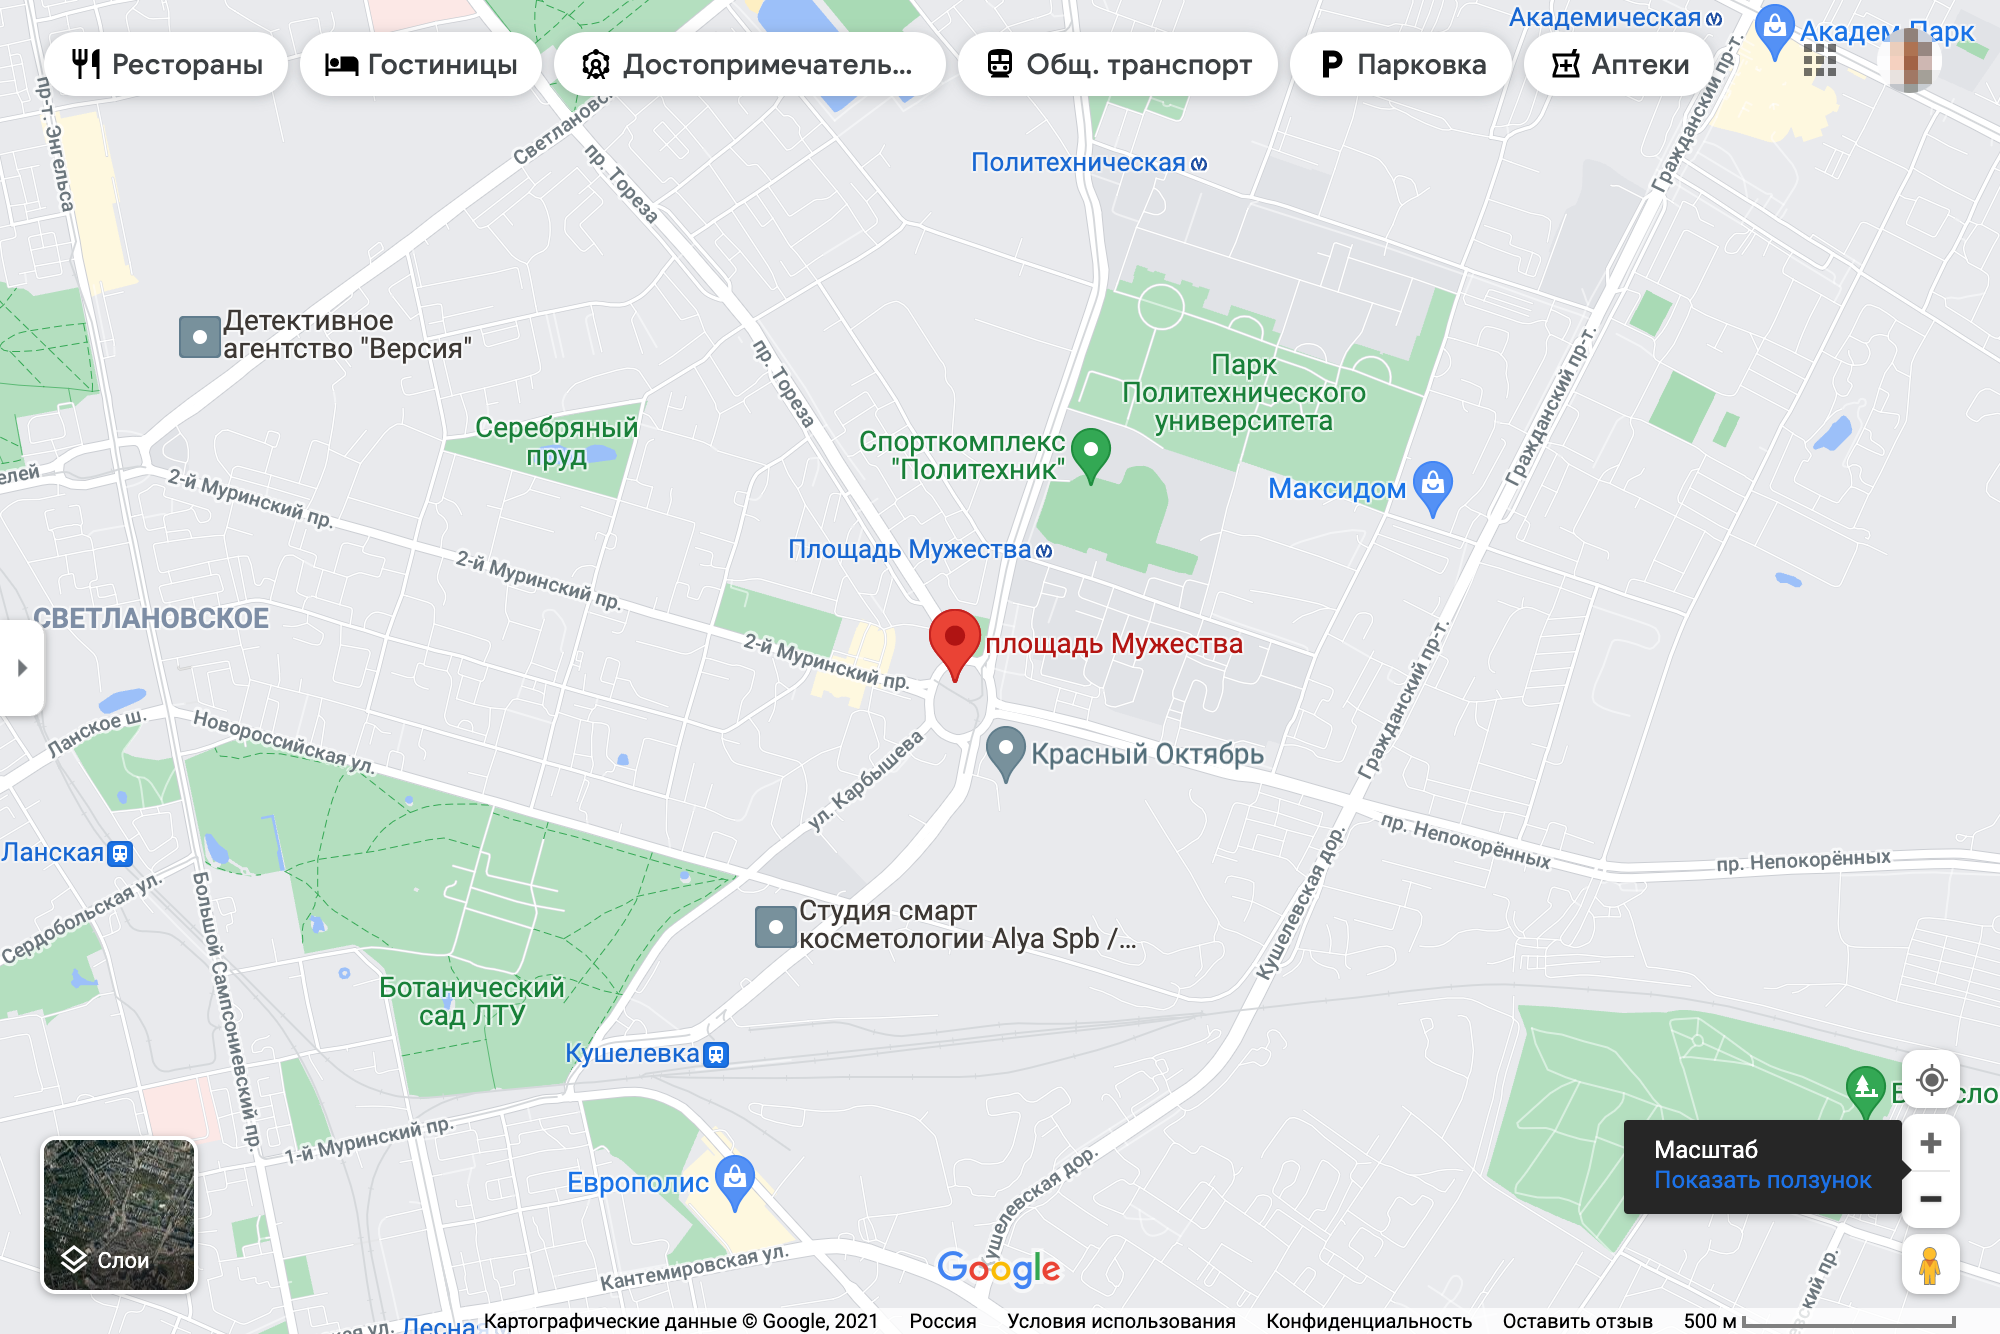 Метро «Площадь Мужества» на карте. Источник: Google